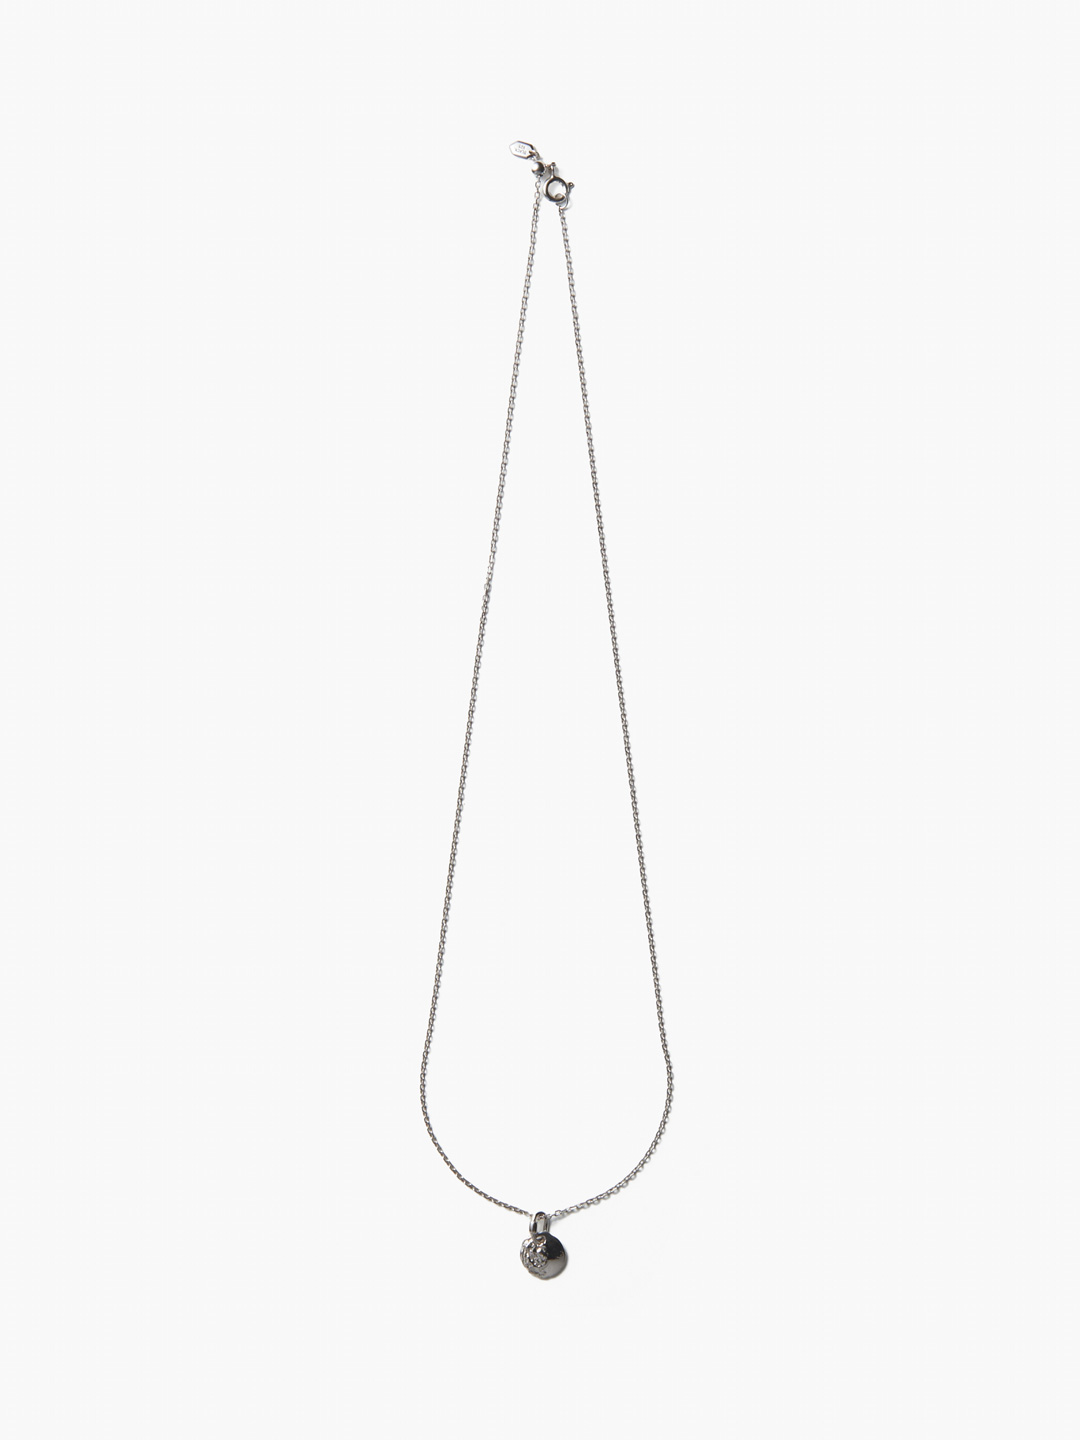 Aspen 50 Necklace - Silver